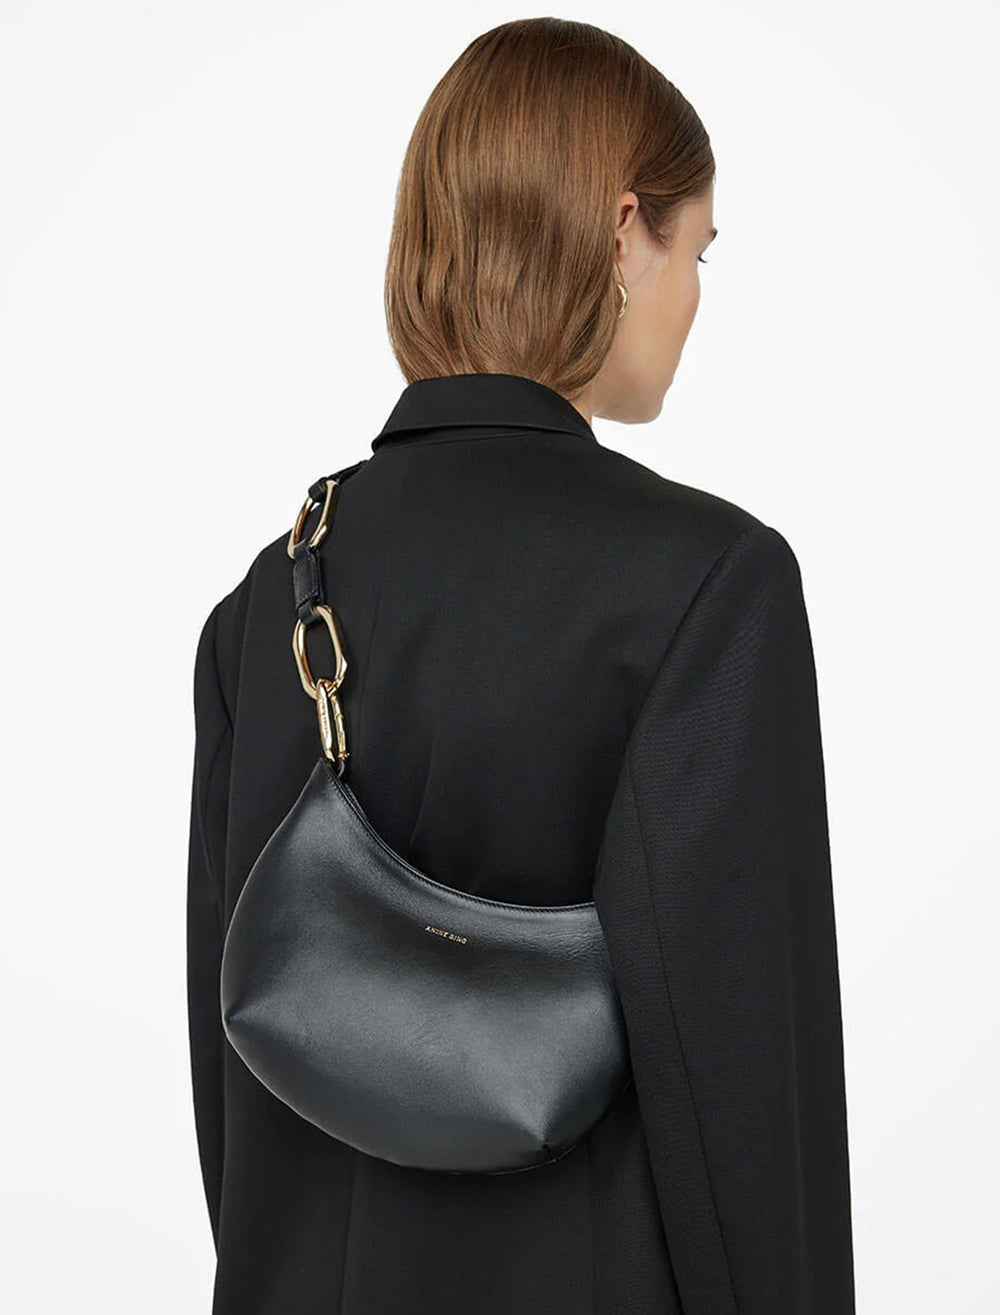 Model wearing Anine Bing's mini jody bag in black.